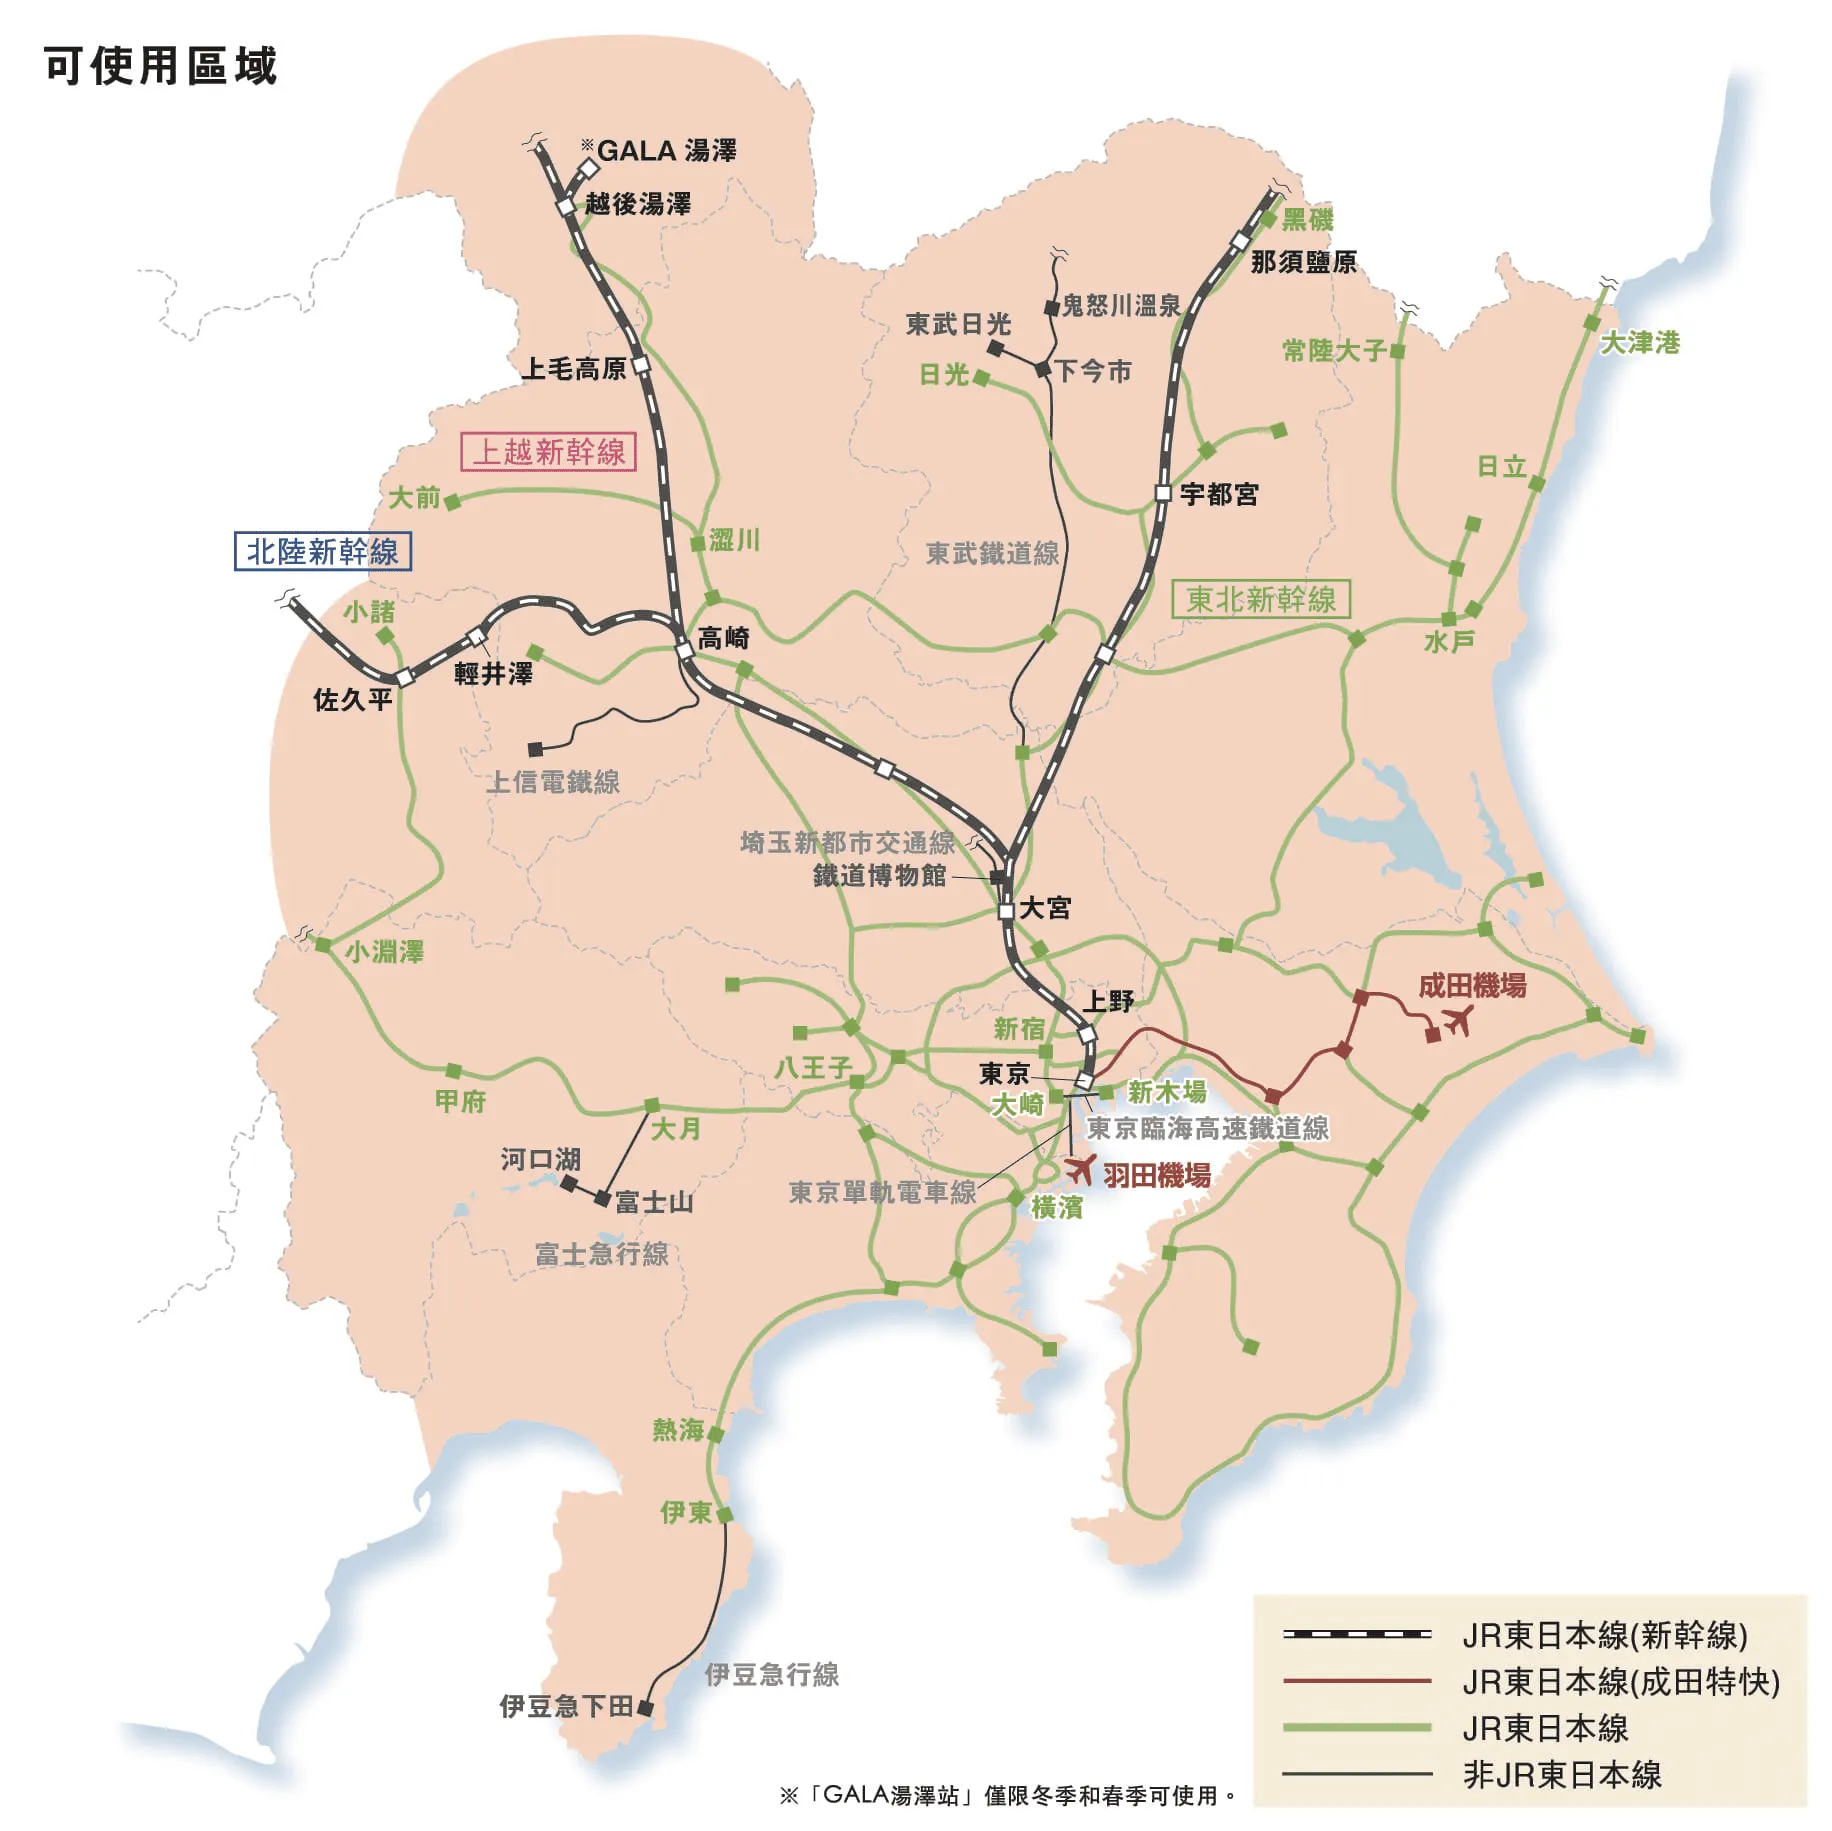 JR PASS東日本廣域周遊券路線圖